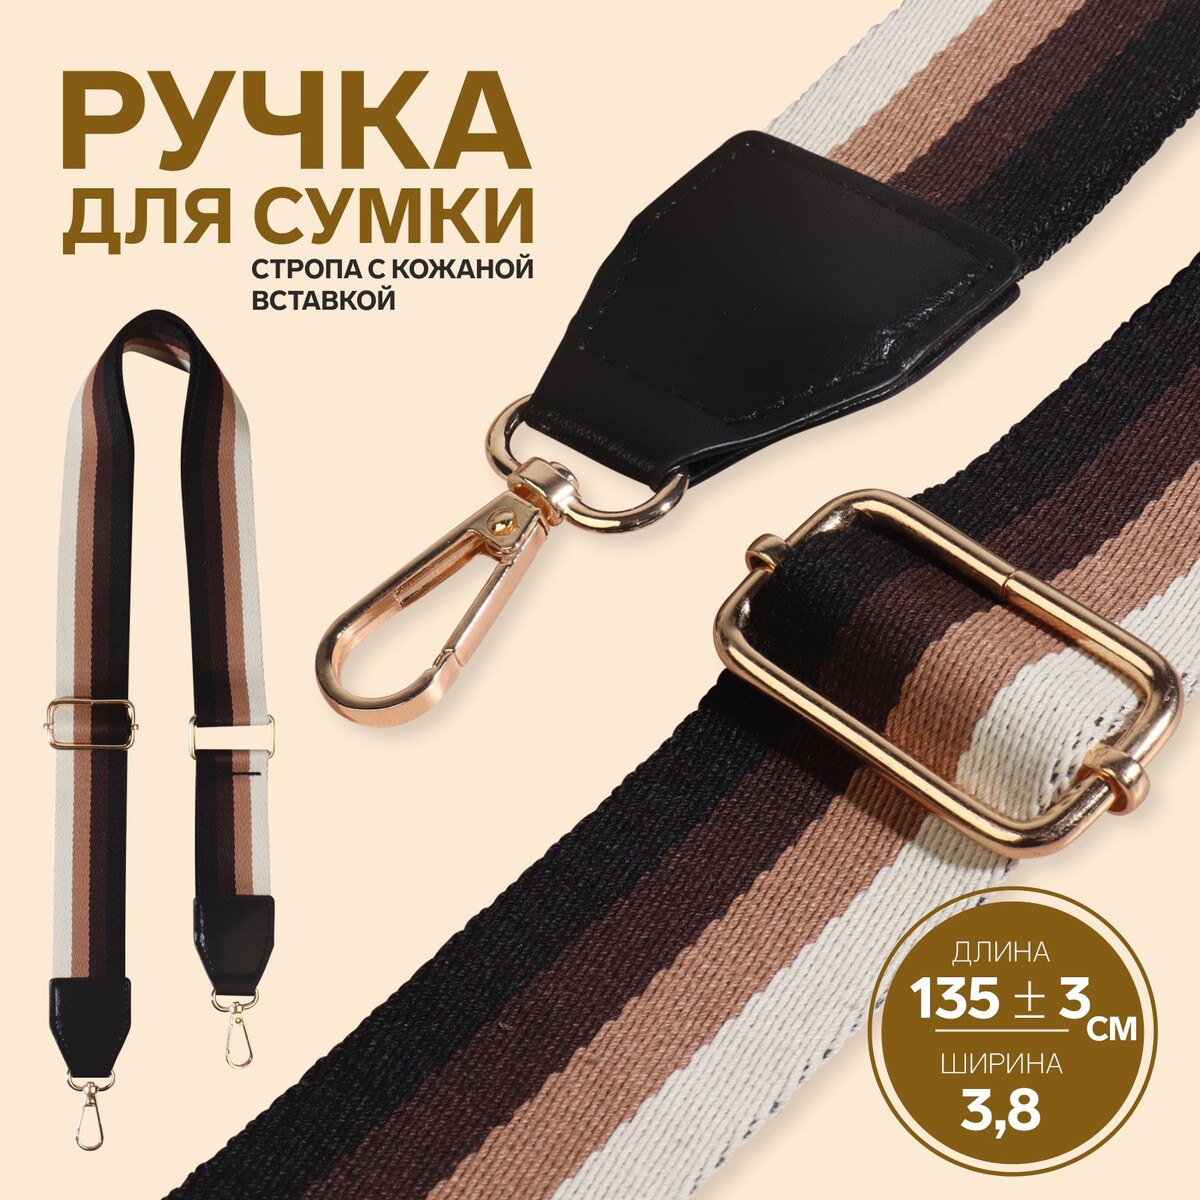 Ручка для сумки, стропа с кожаной вставкой, 139 ± 3 × 3,8 см, цвет черный/коричневый/песочный/золотой ручка для сумки стропа с кожаной вставкой 140 × 3 8 см белый красный